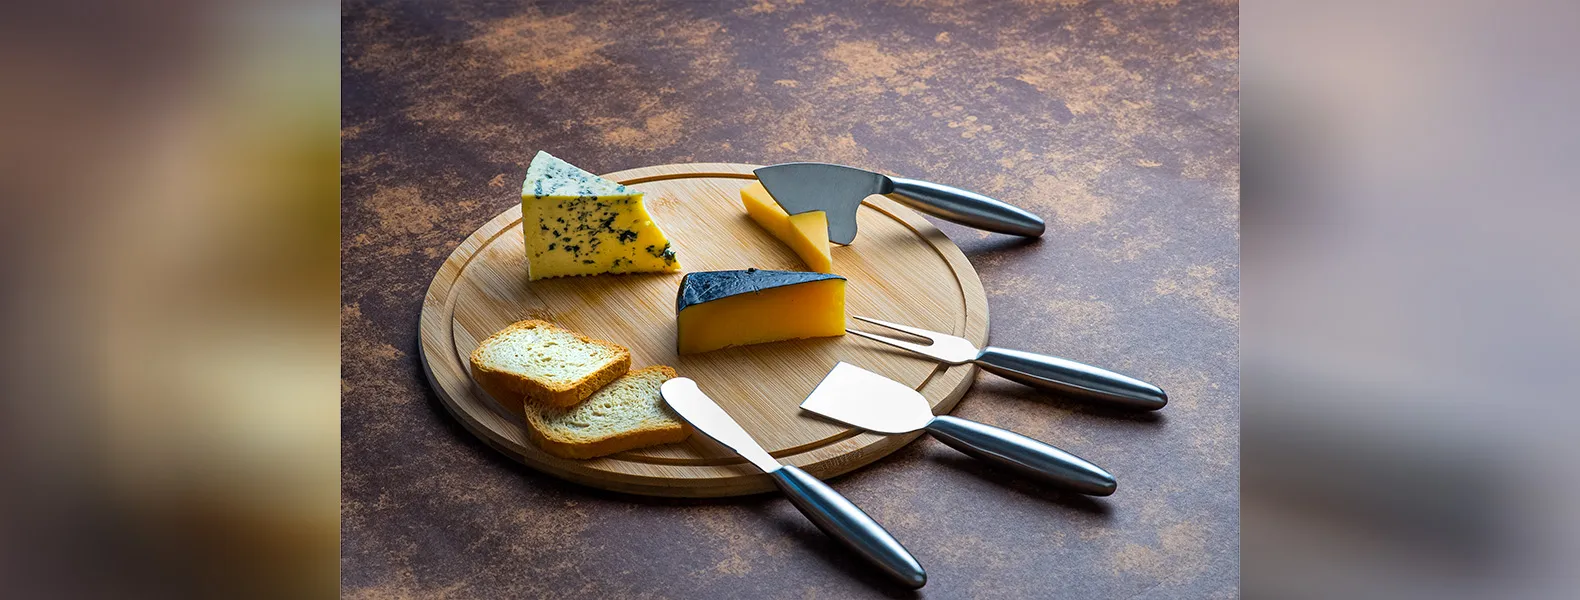 Conjunto para queijo em Bambu/Inox. Acompanha tábua em bambu; garfo, faca sem ponta, faca com ponta e faca quadrada em aço Inox 2CR13.